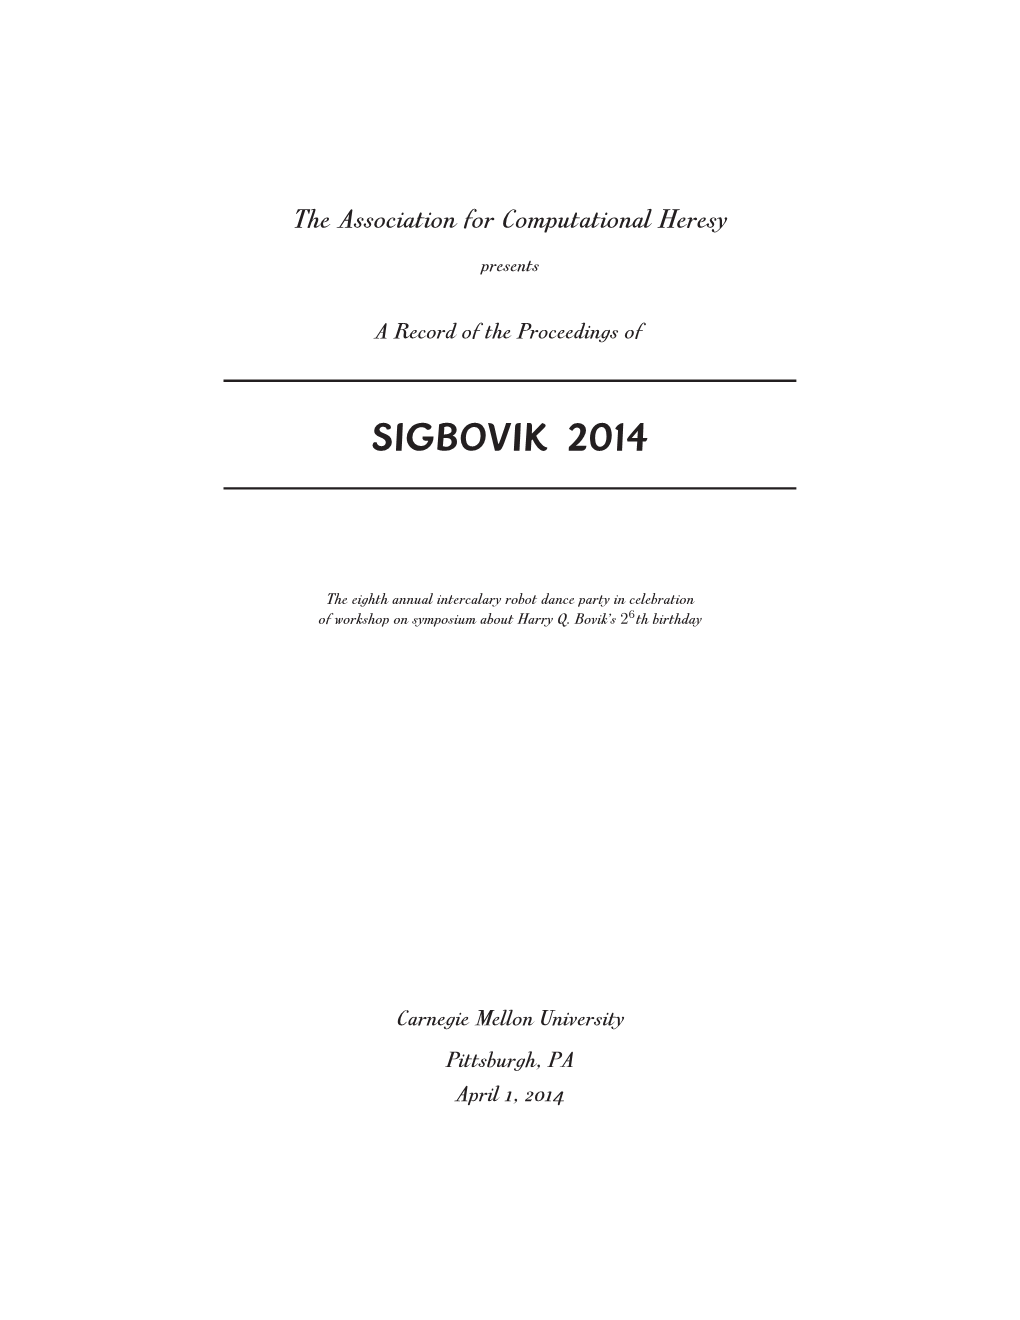 SIGBOVIK 2014 Proceedings